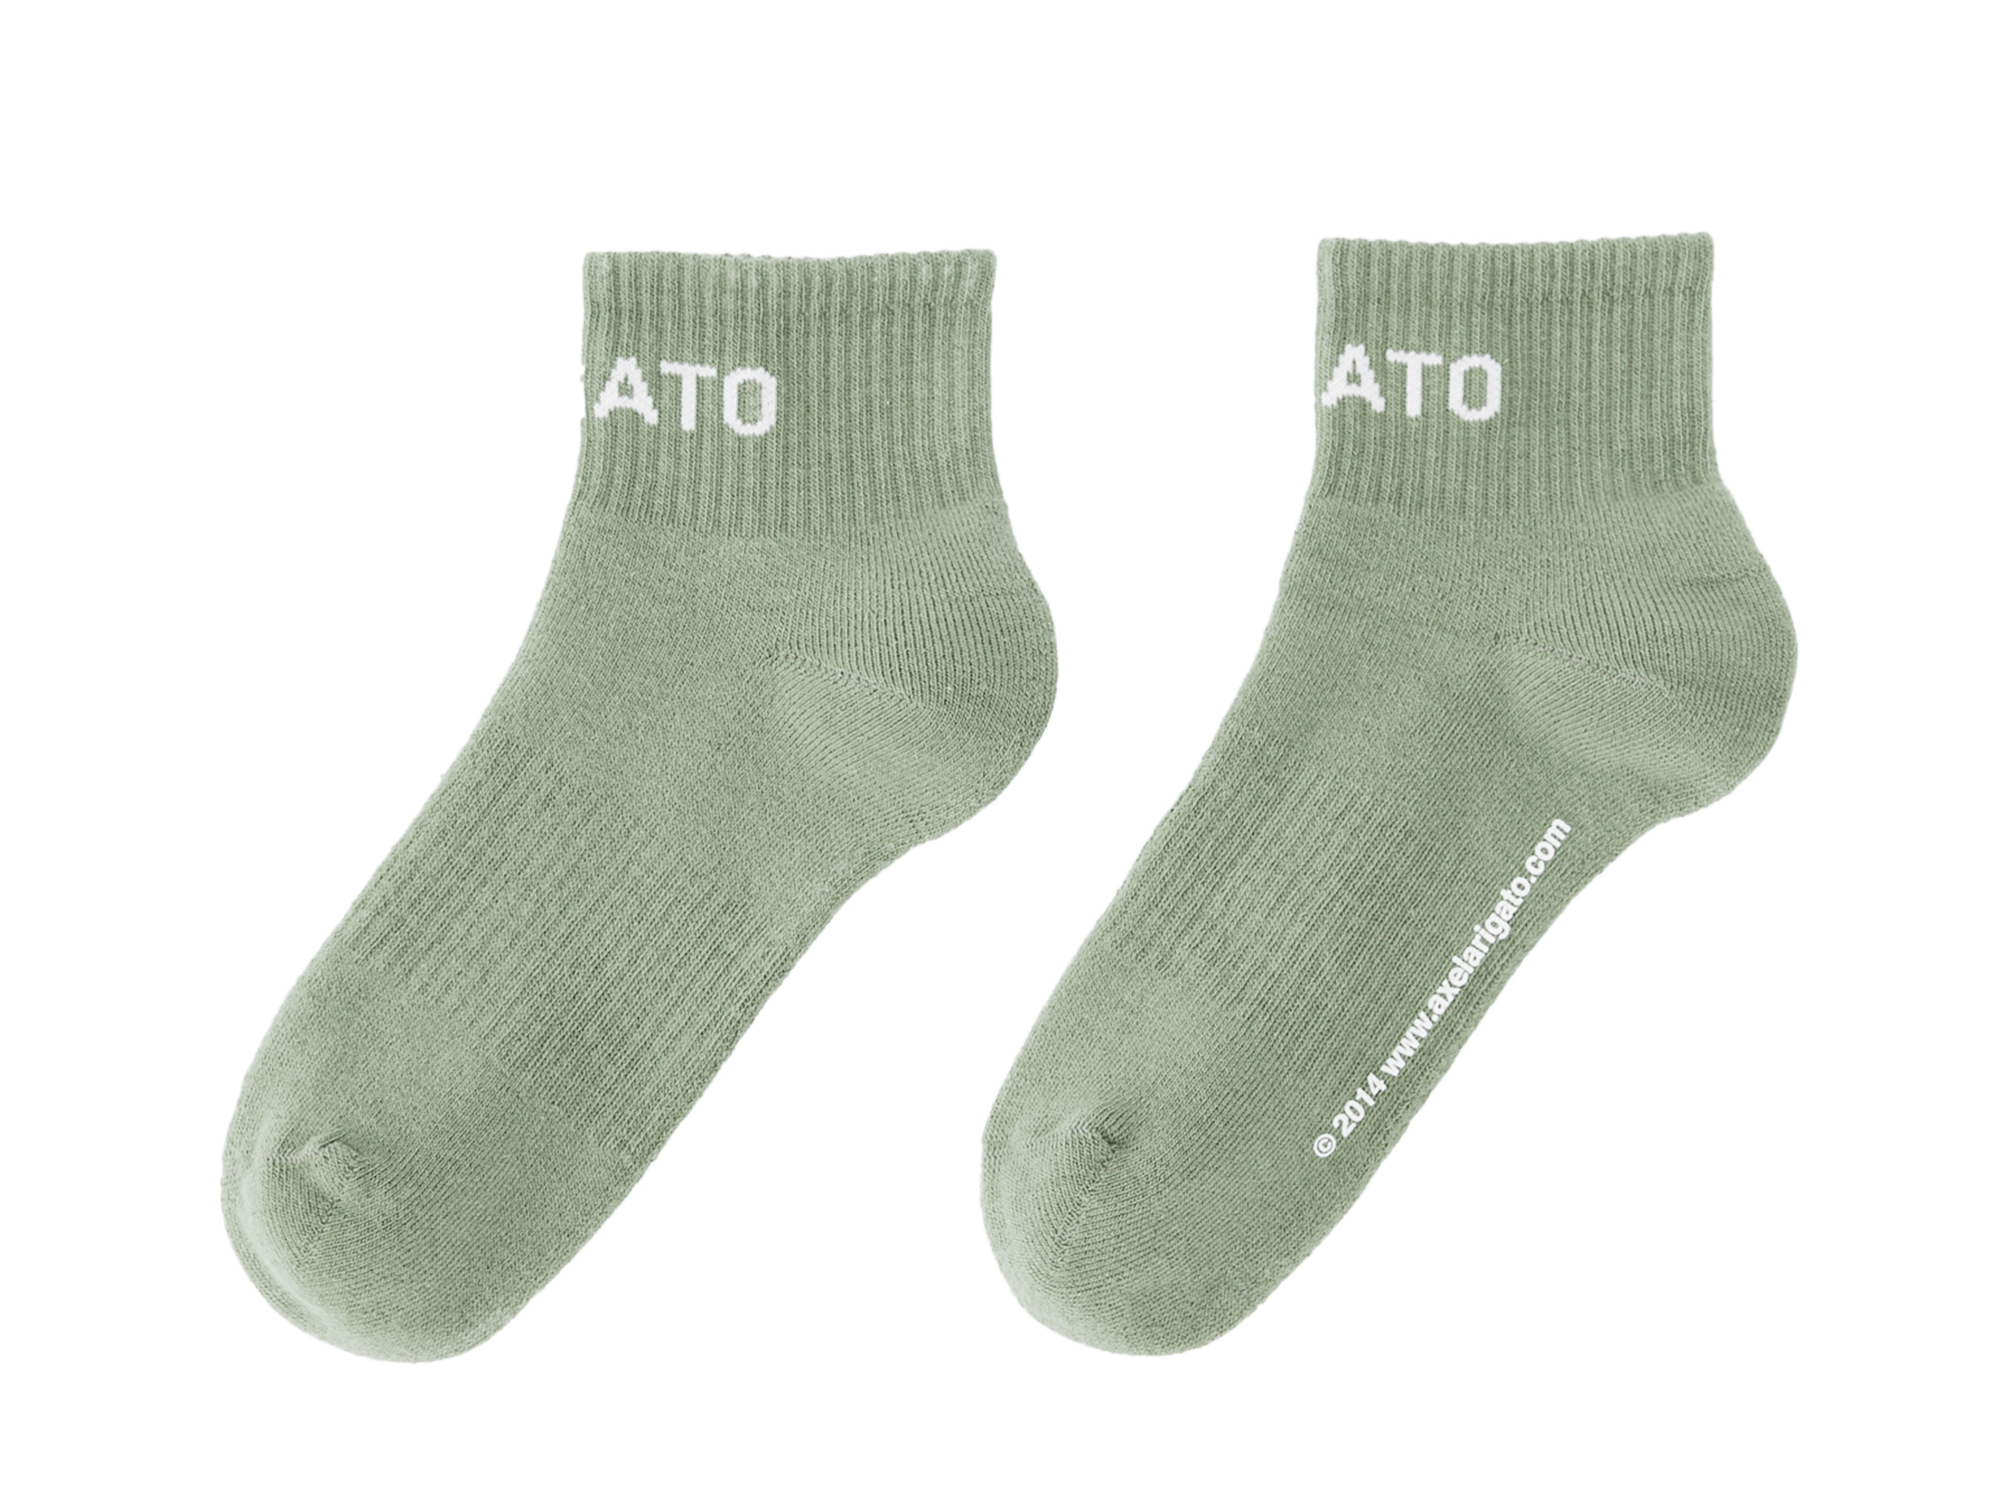 Arigato Logo Ankle Socks